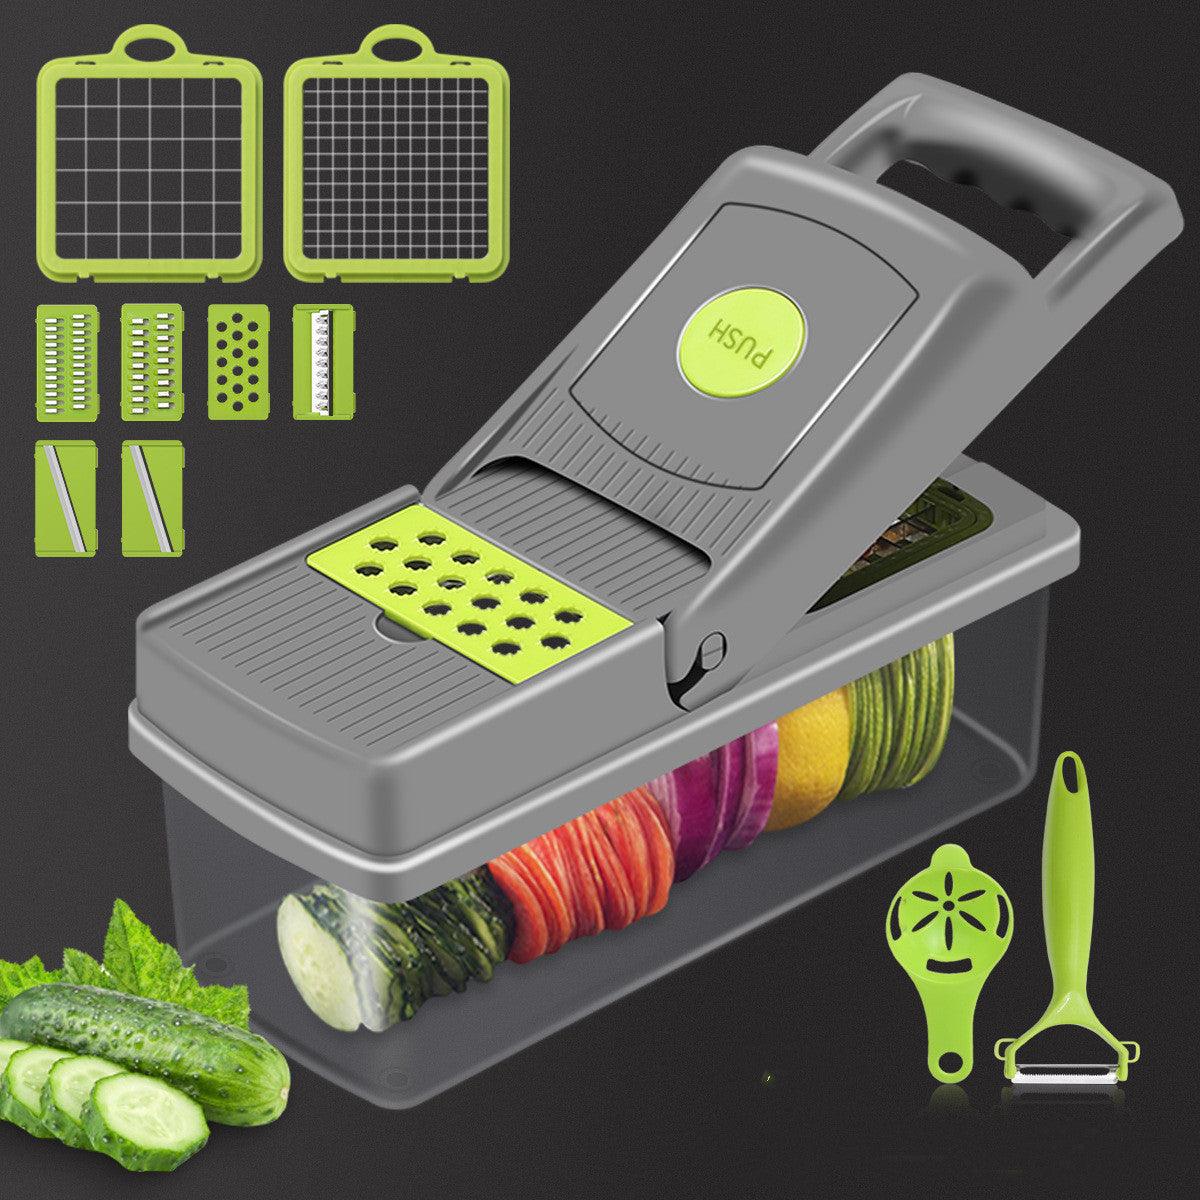 Slicer™ - Multifunctionele Keukensnijder ikmoetdithebben